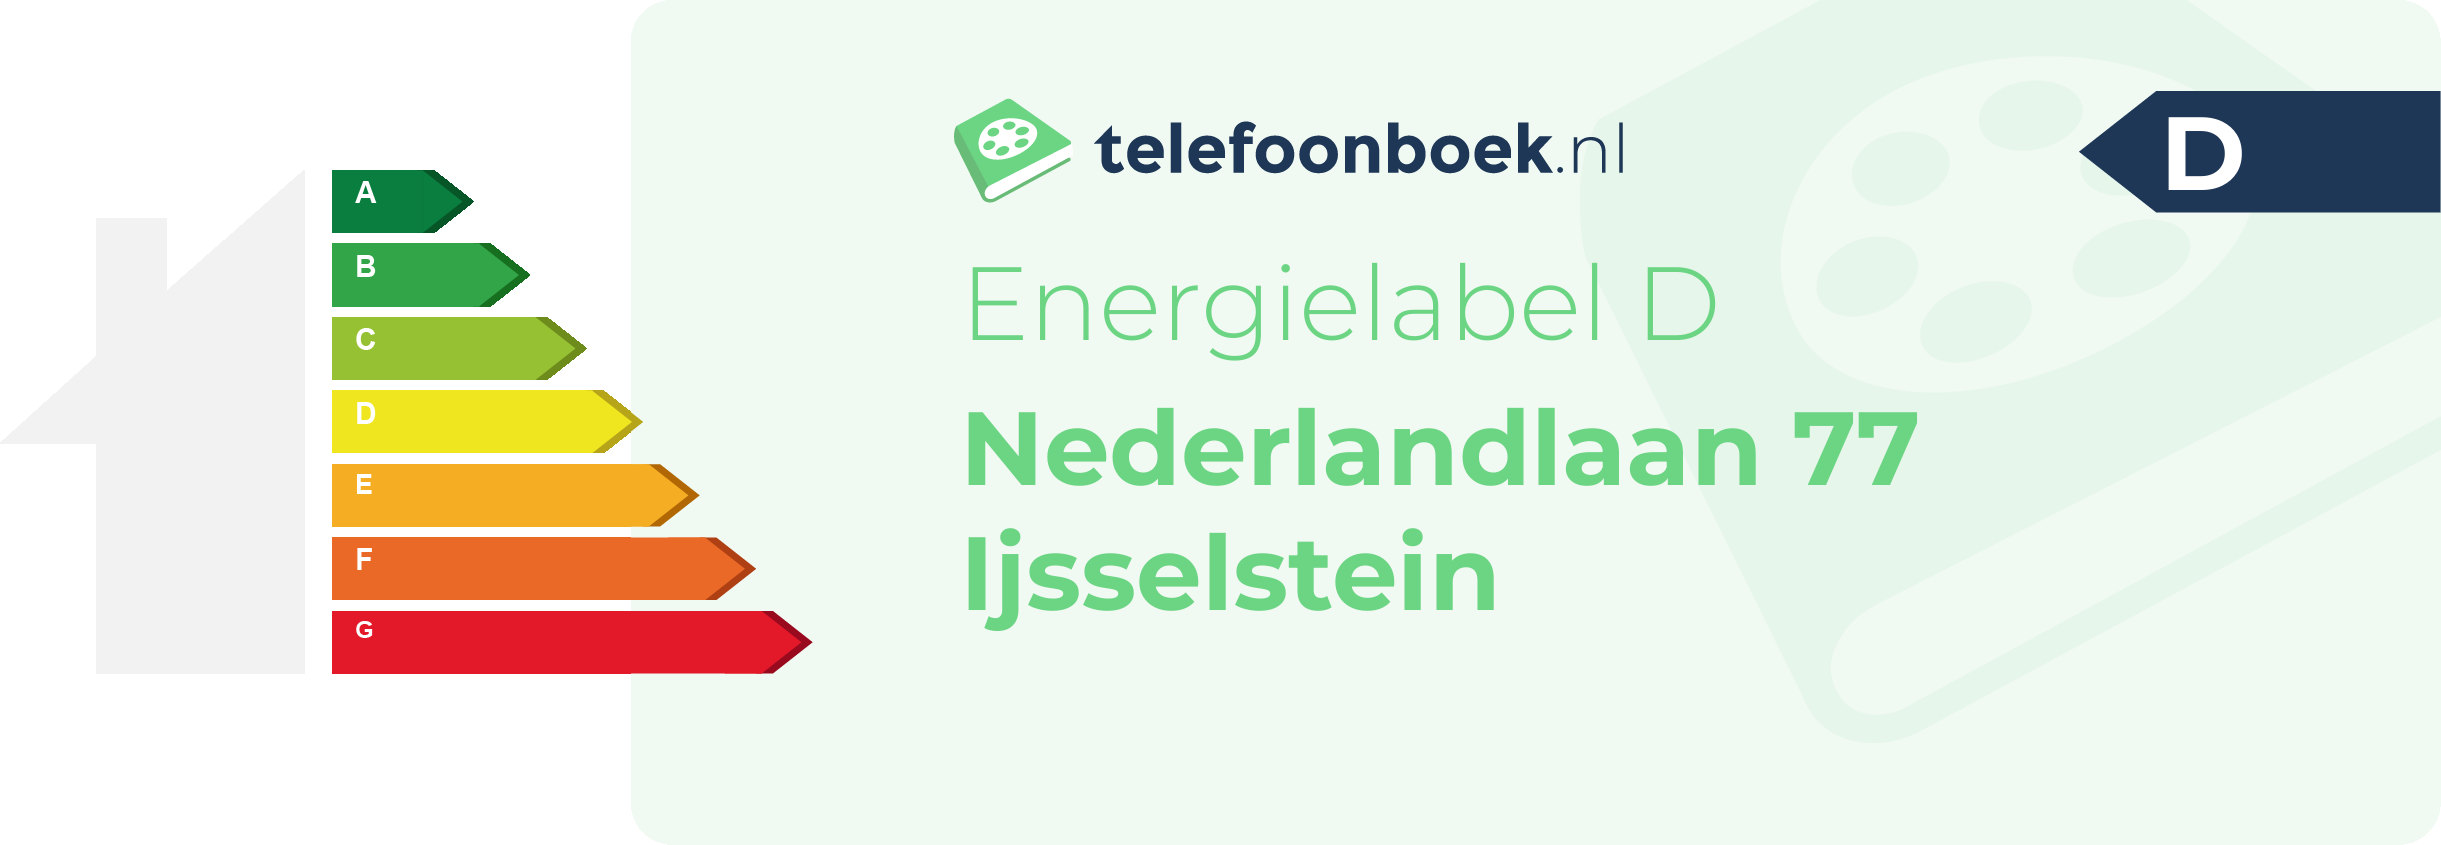 Energielabel Nederlandlaan 77 Ijsselstein